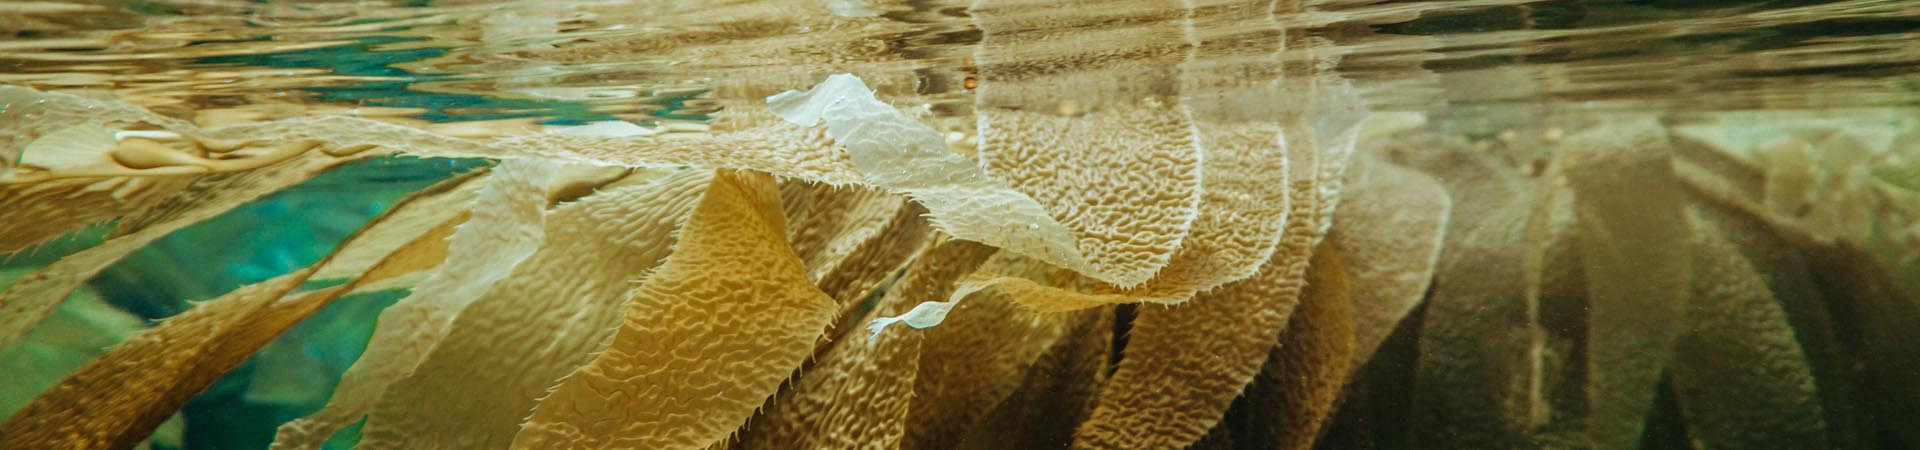 underwater image of seaweed